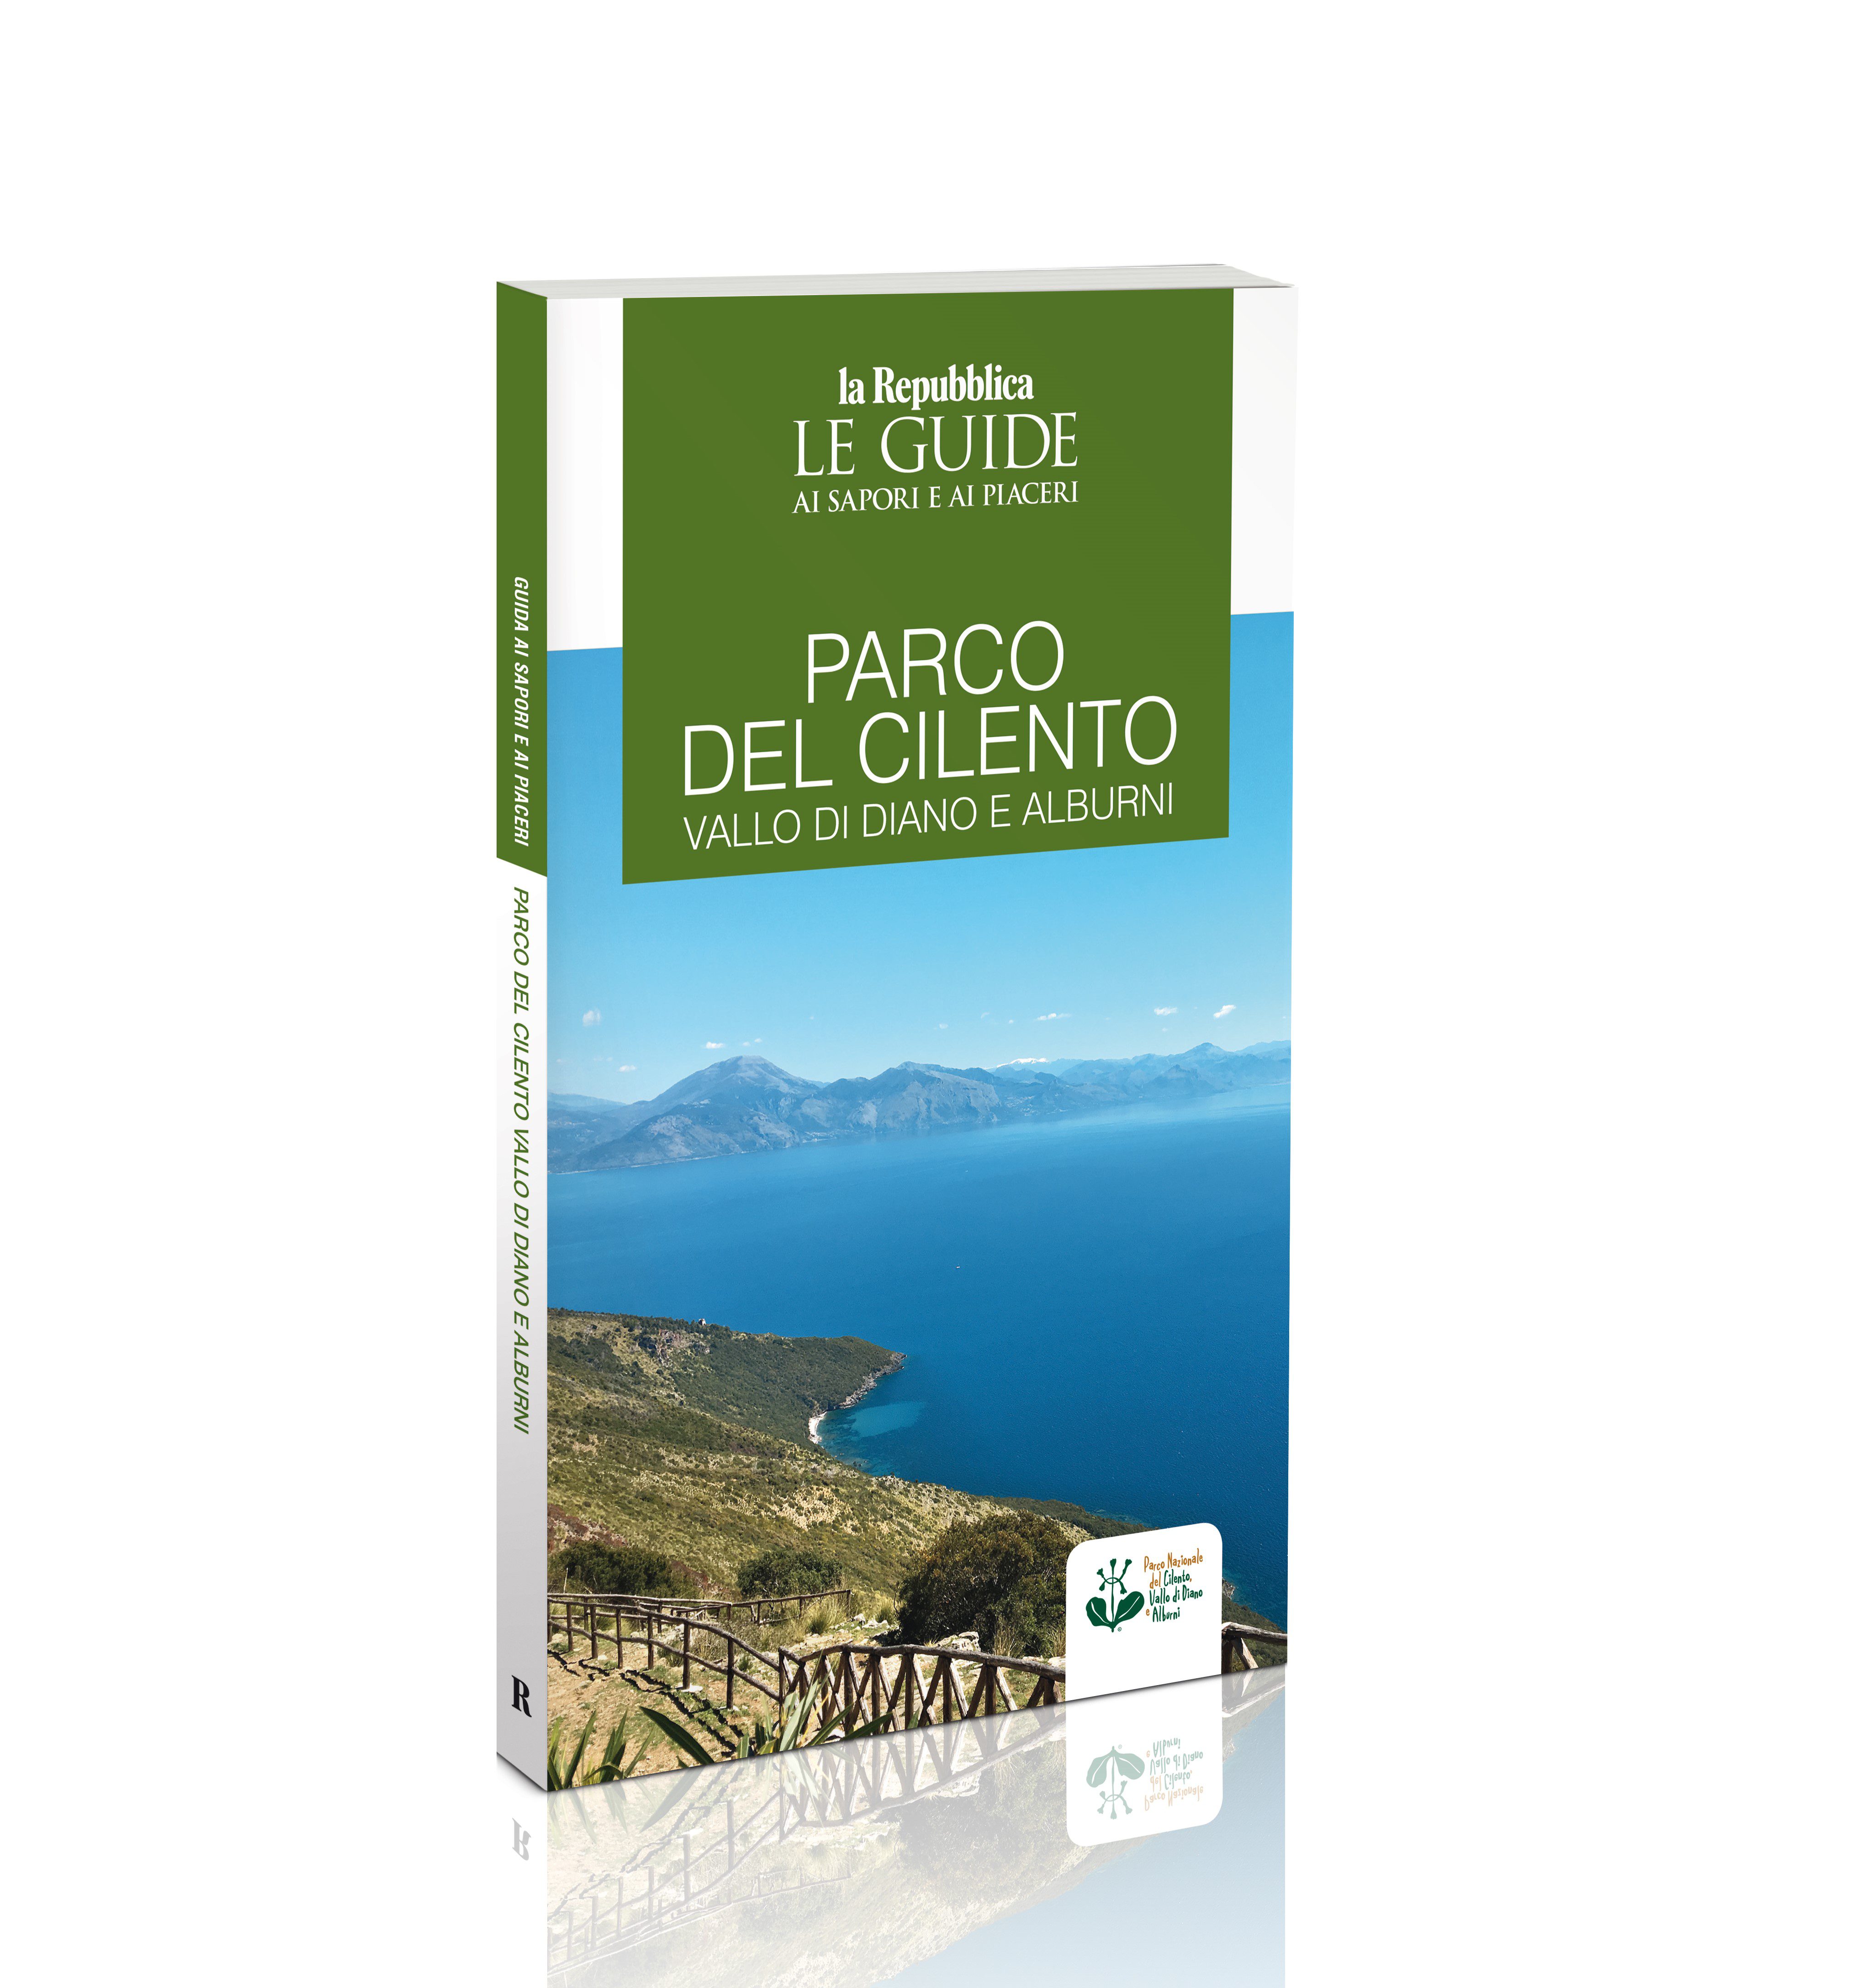 Le Guide di Repubblica, in edicola la guida del Parco nazionale del Cilento